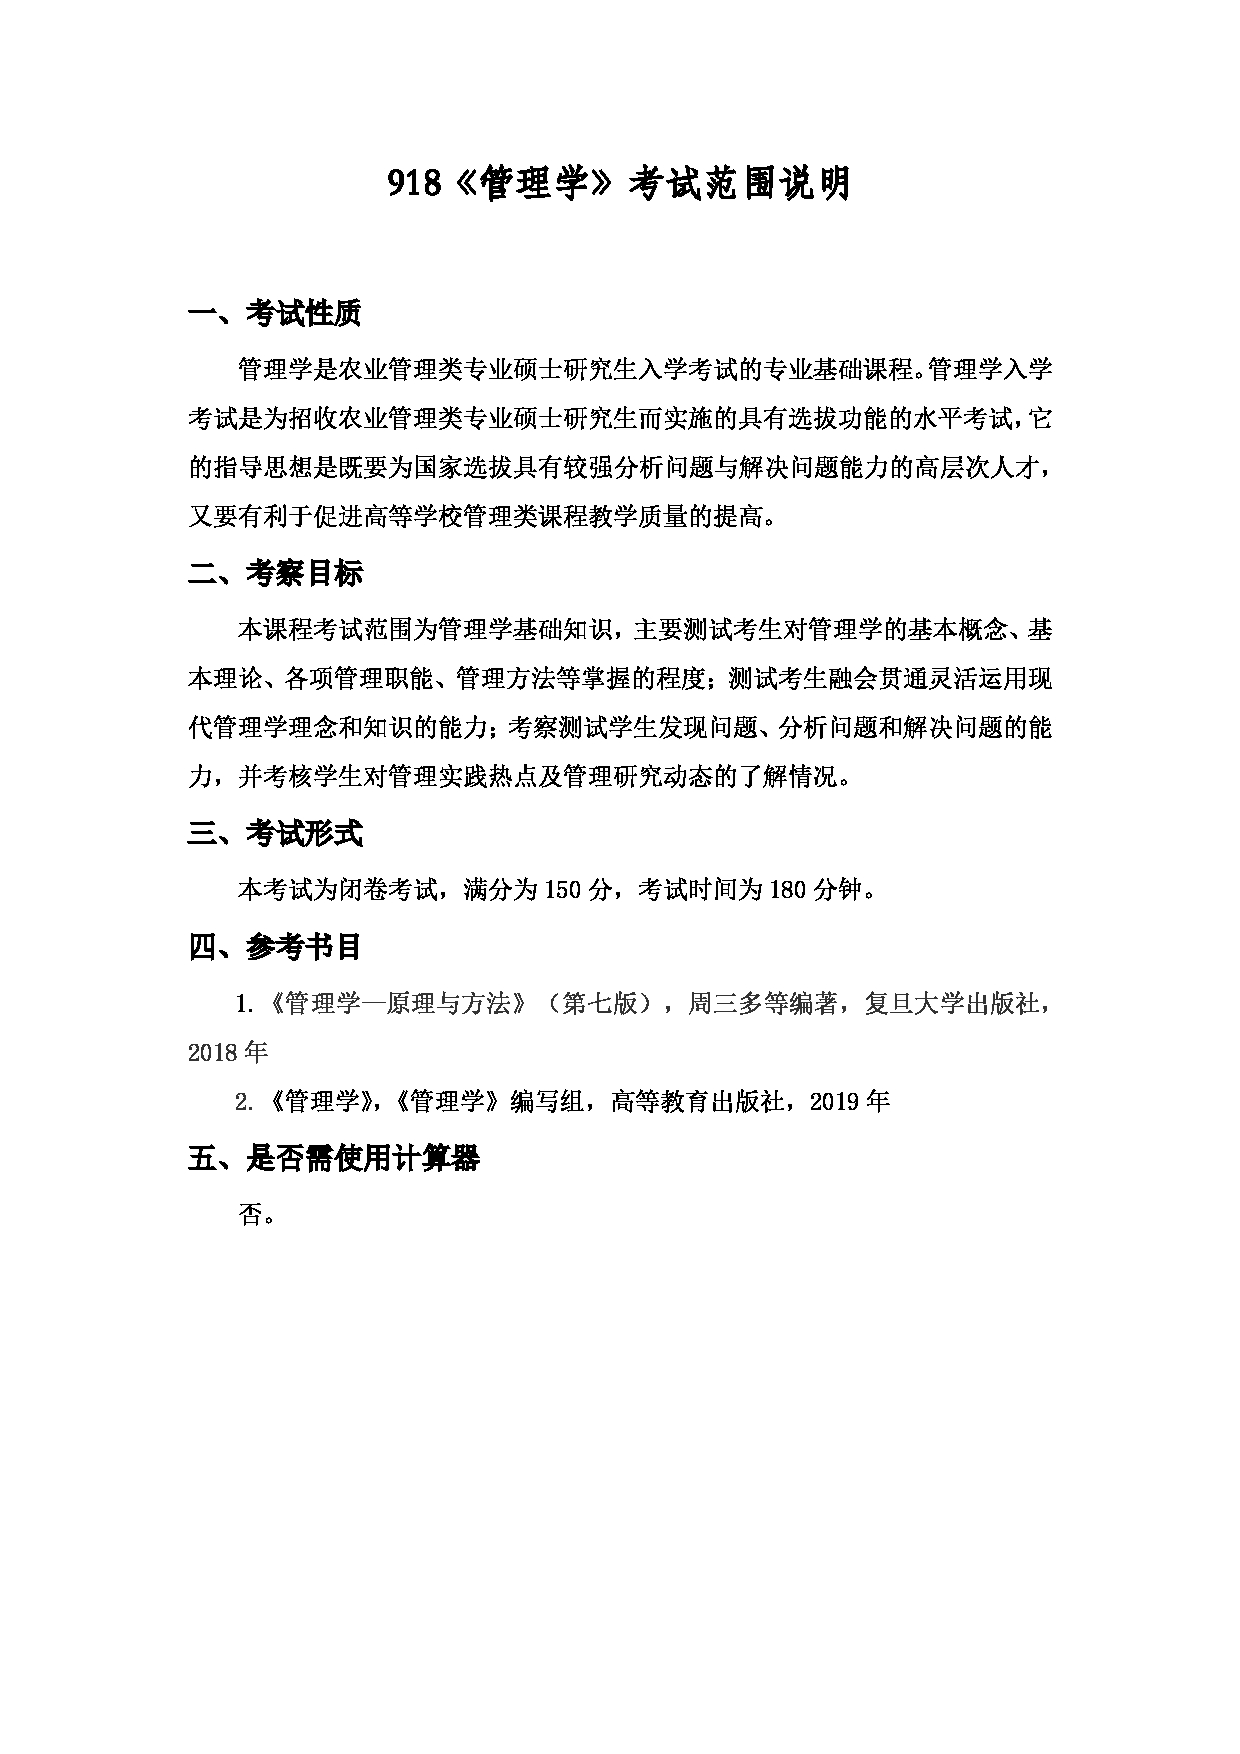 2022考研大纲：上海海洋大学2022年考研自命题科目 918管理学 考试大纲第1页